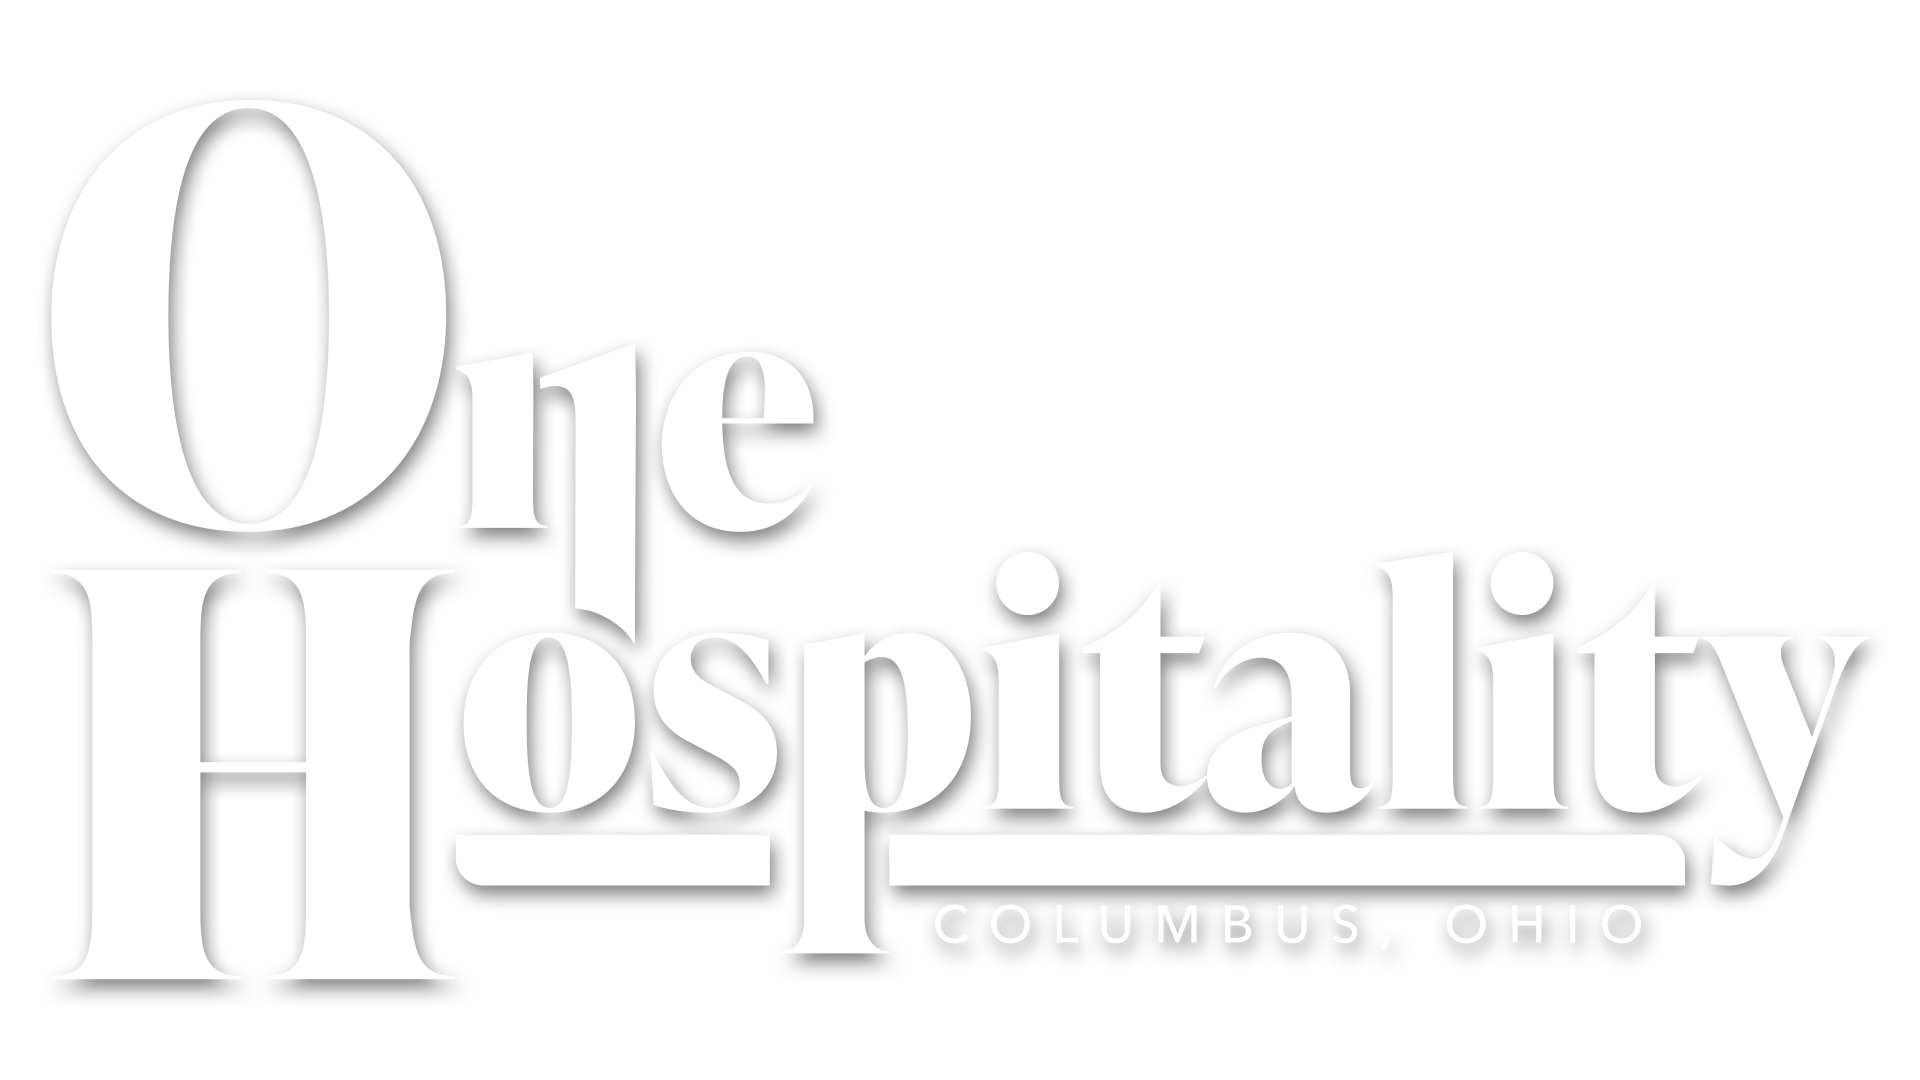 One Hospitality - Columbus, Ohio